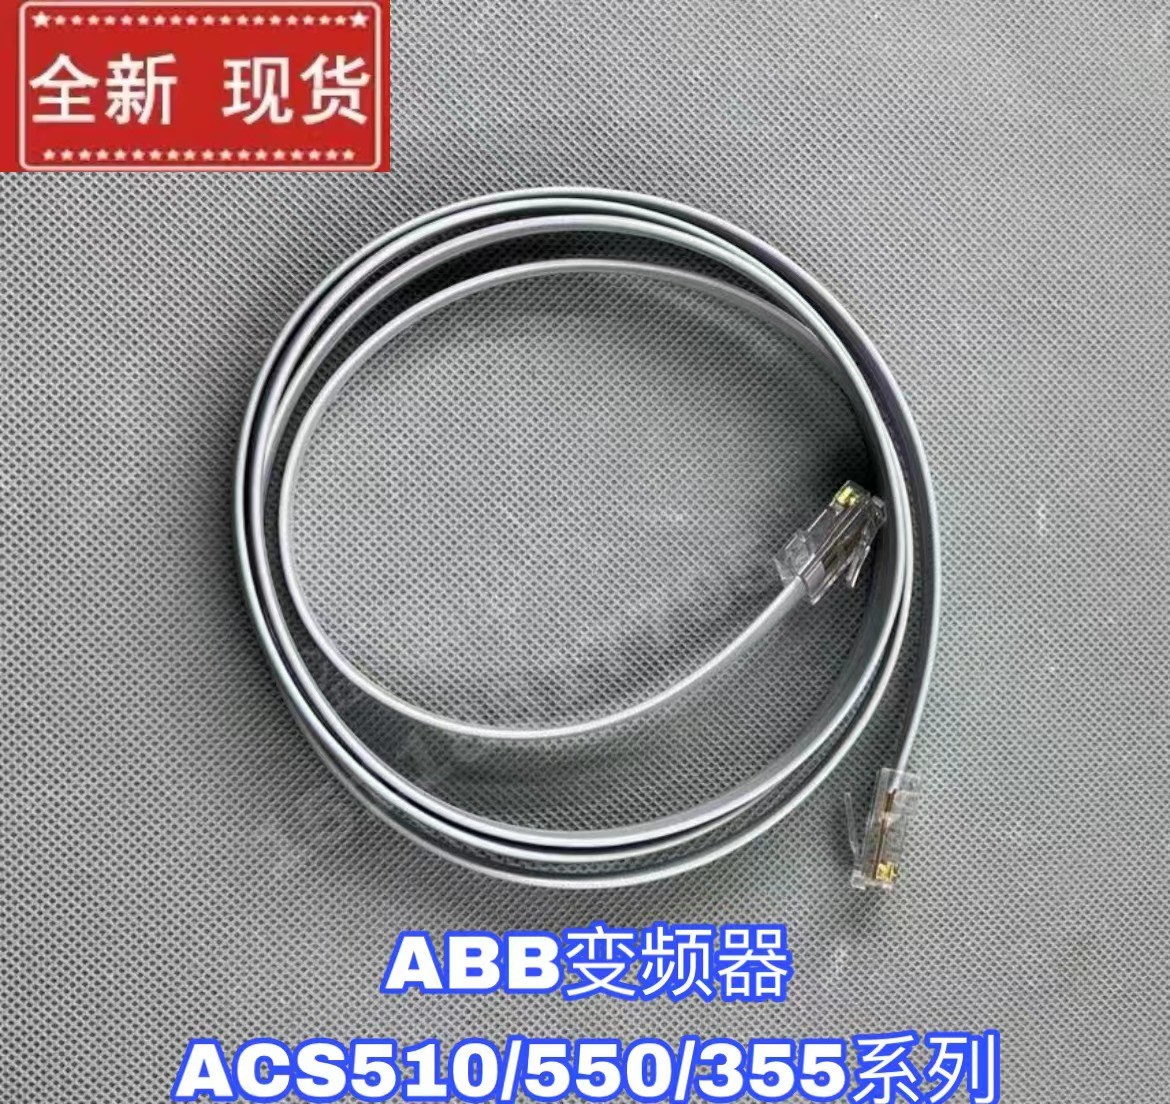 适用于ABB变频器ACS510/550/355系列变频器面板延长线数据连接线